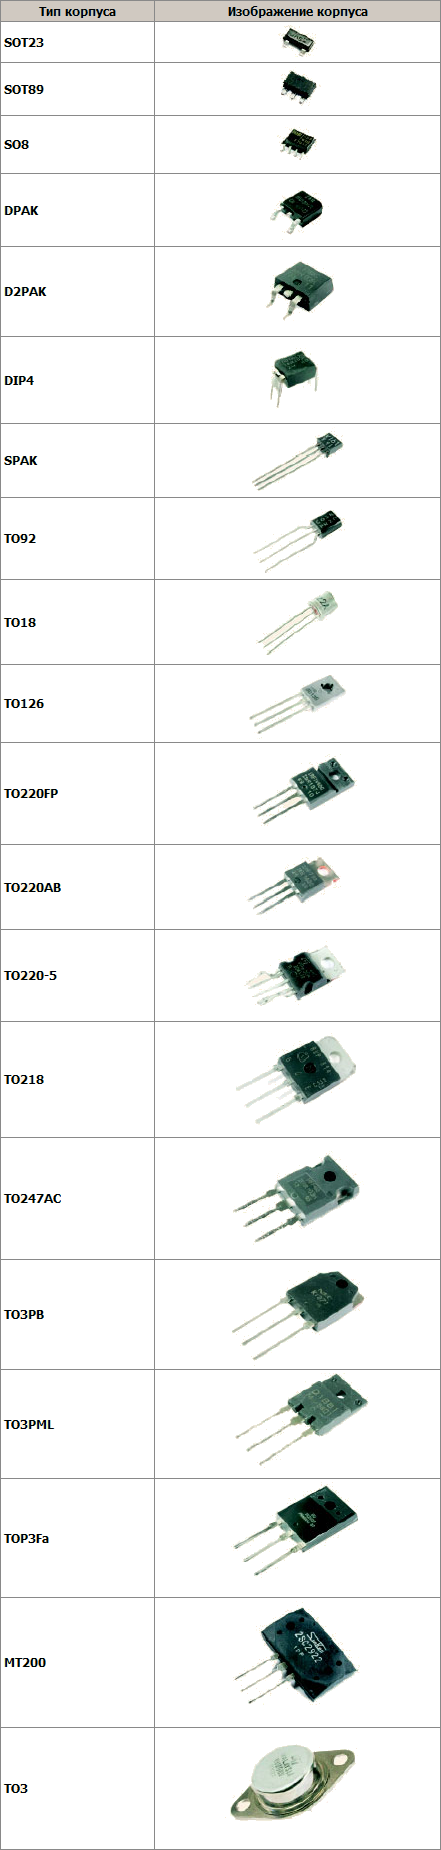 Типы корпусов транзисторов